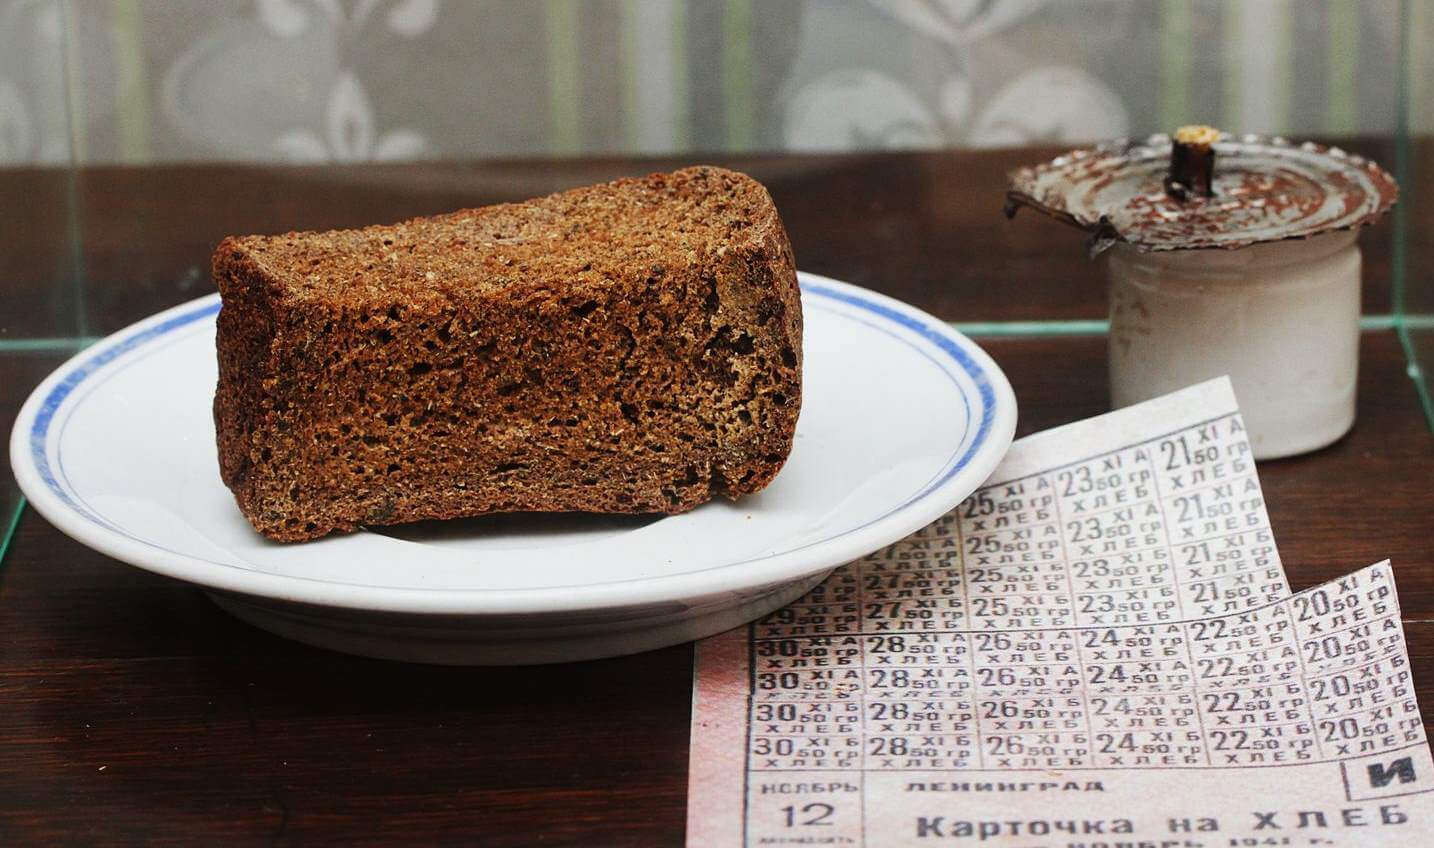 125 Грамм хлеба в блокадном Ленинграде